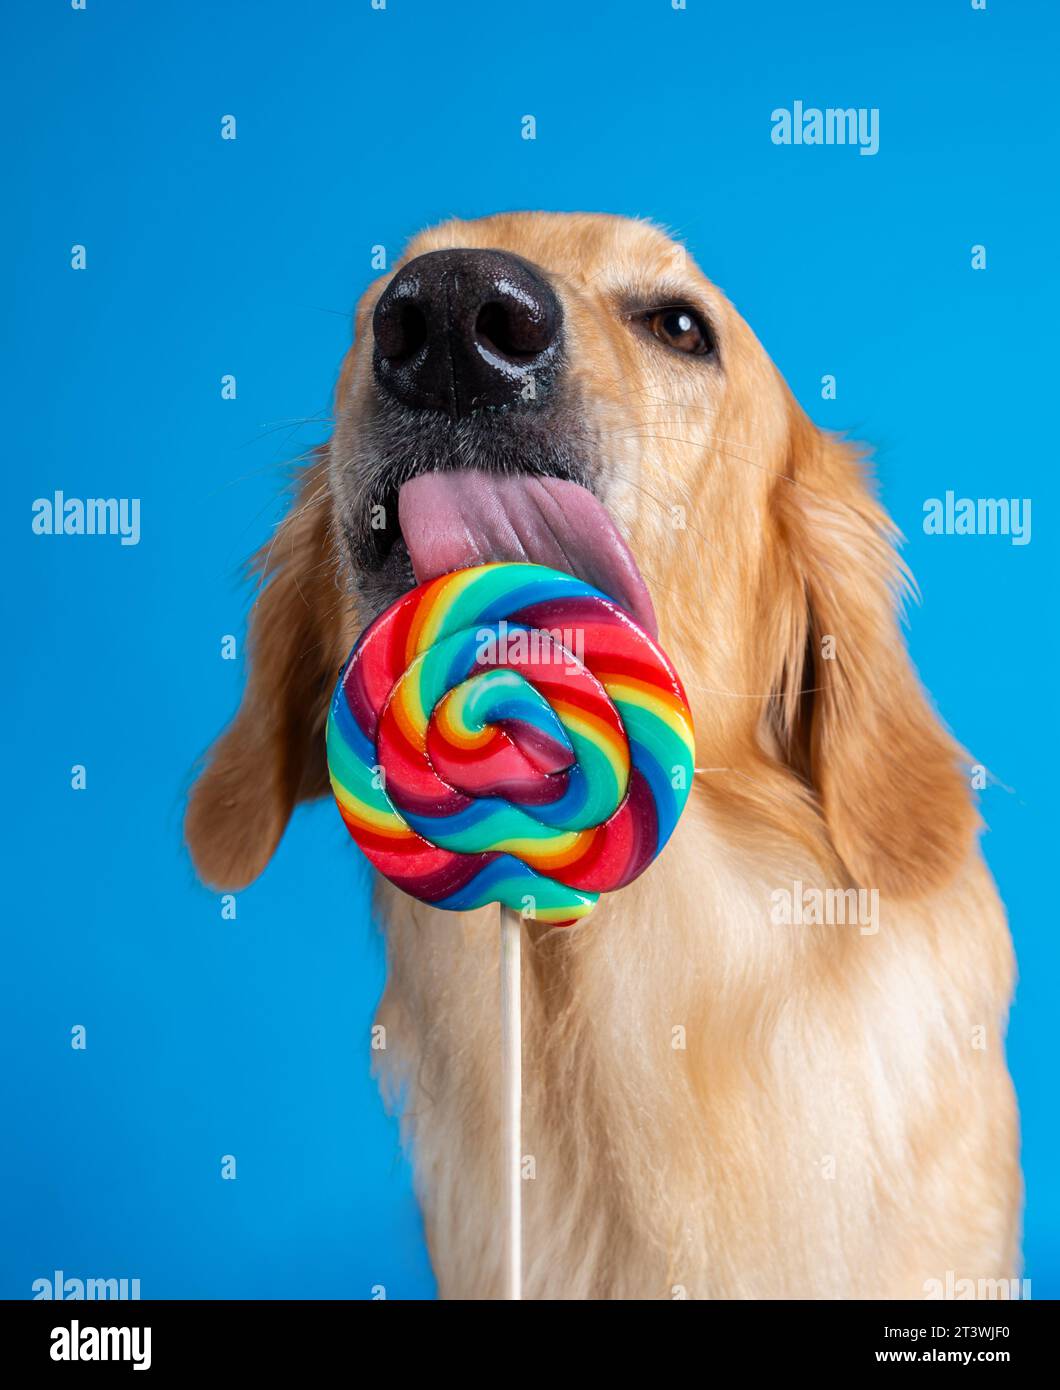 Hund leckt an  großem Lolly - dog slicks on giant lolly Stock Photo